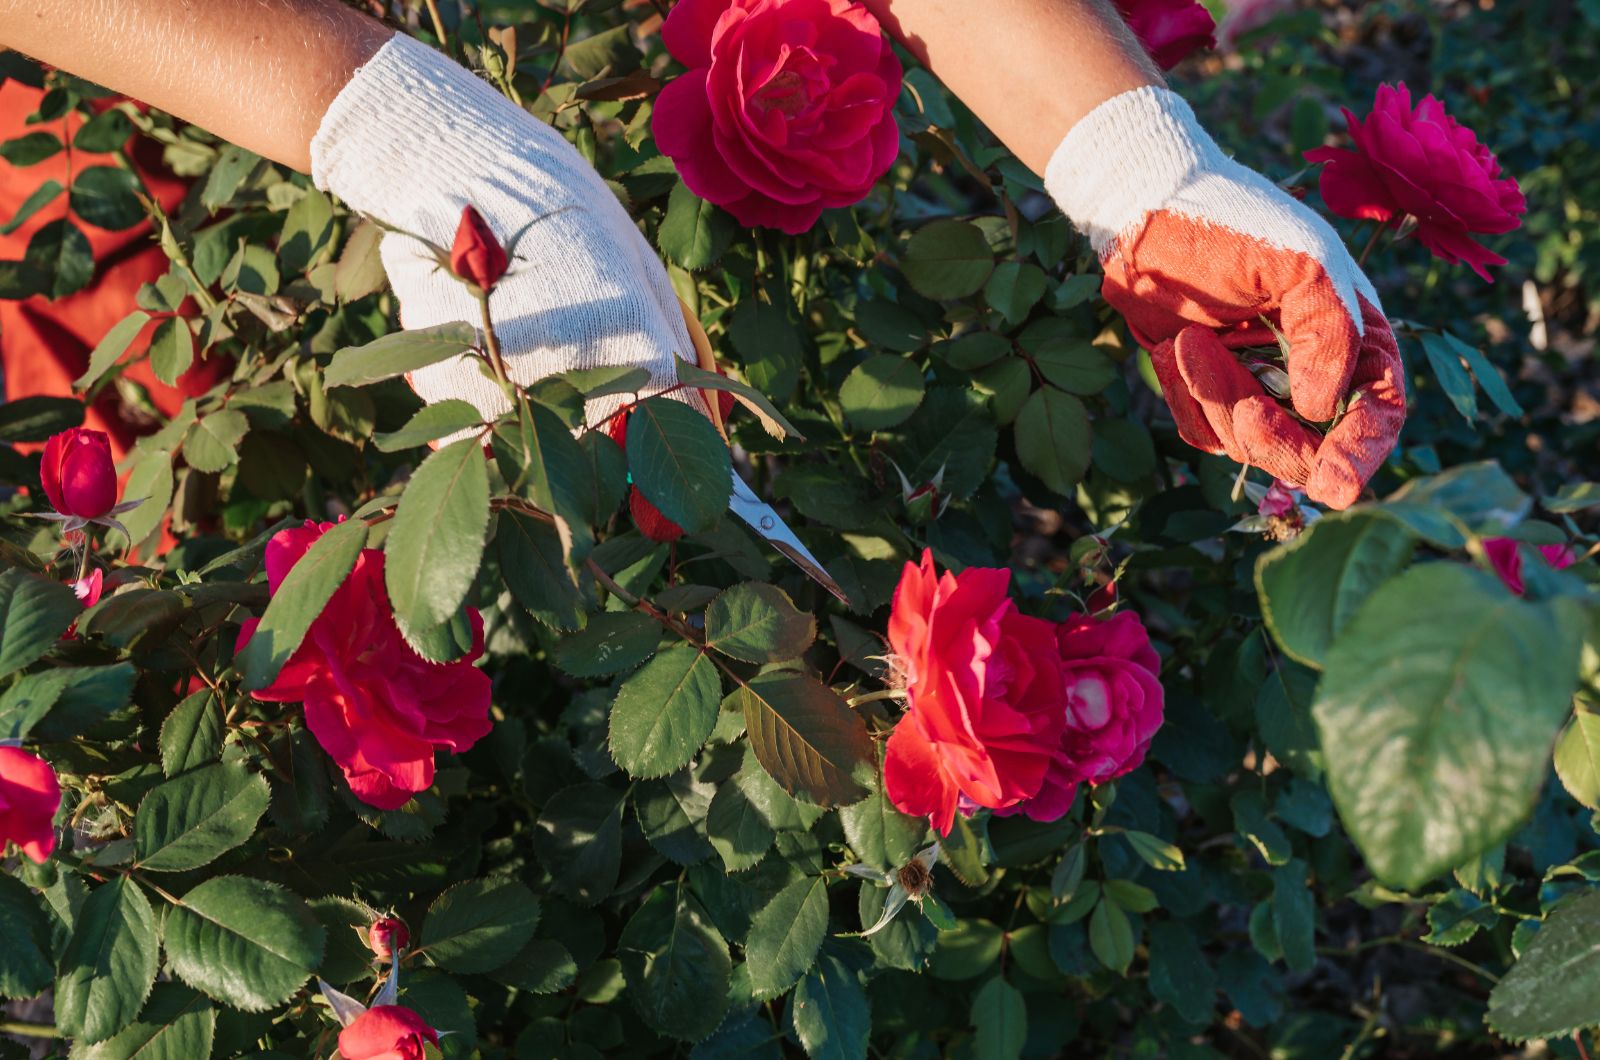 Pruning red roses bush